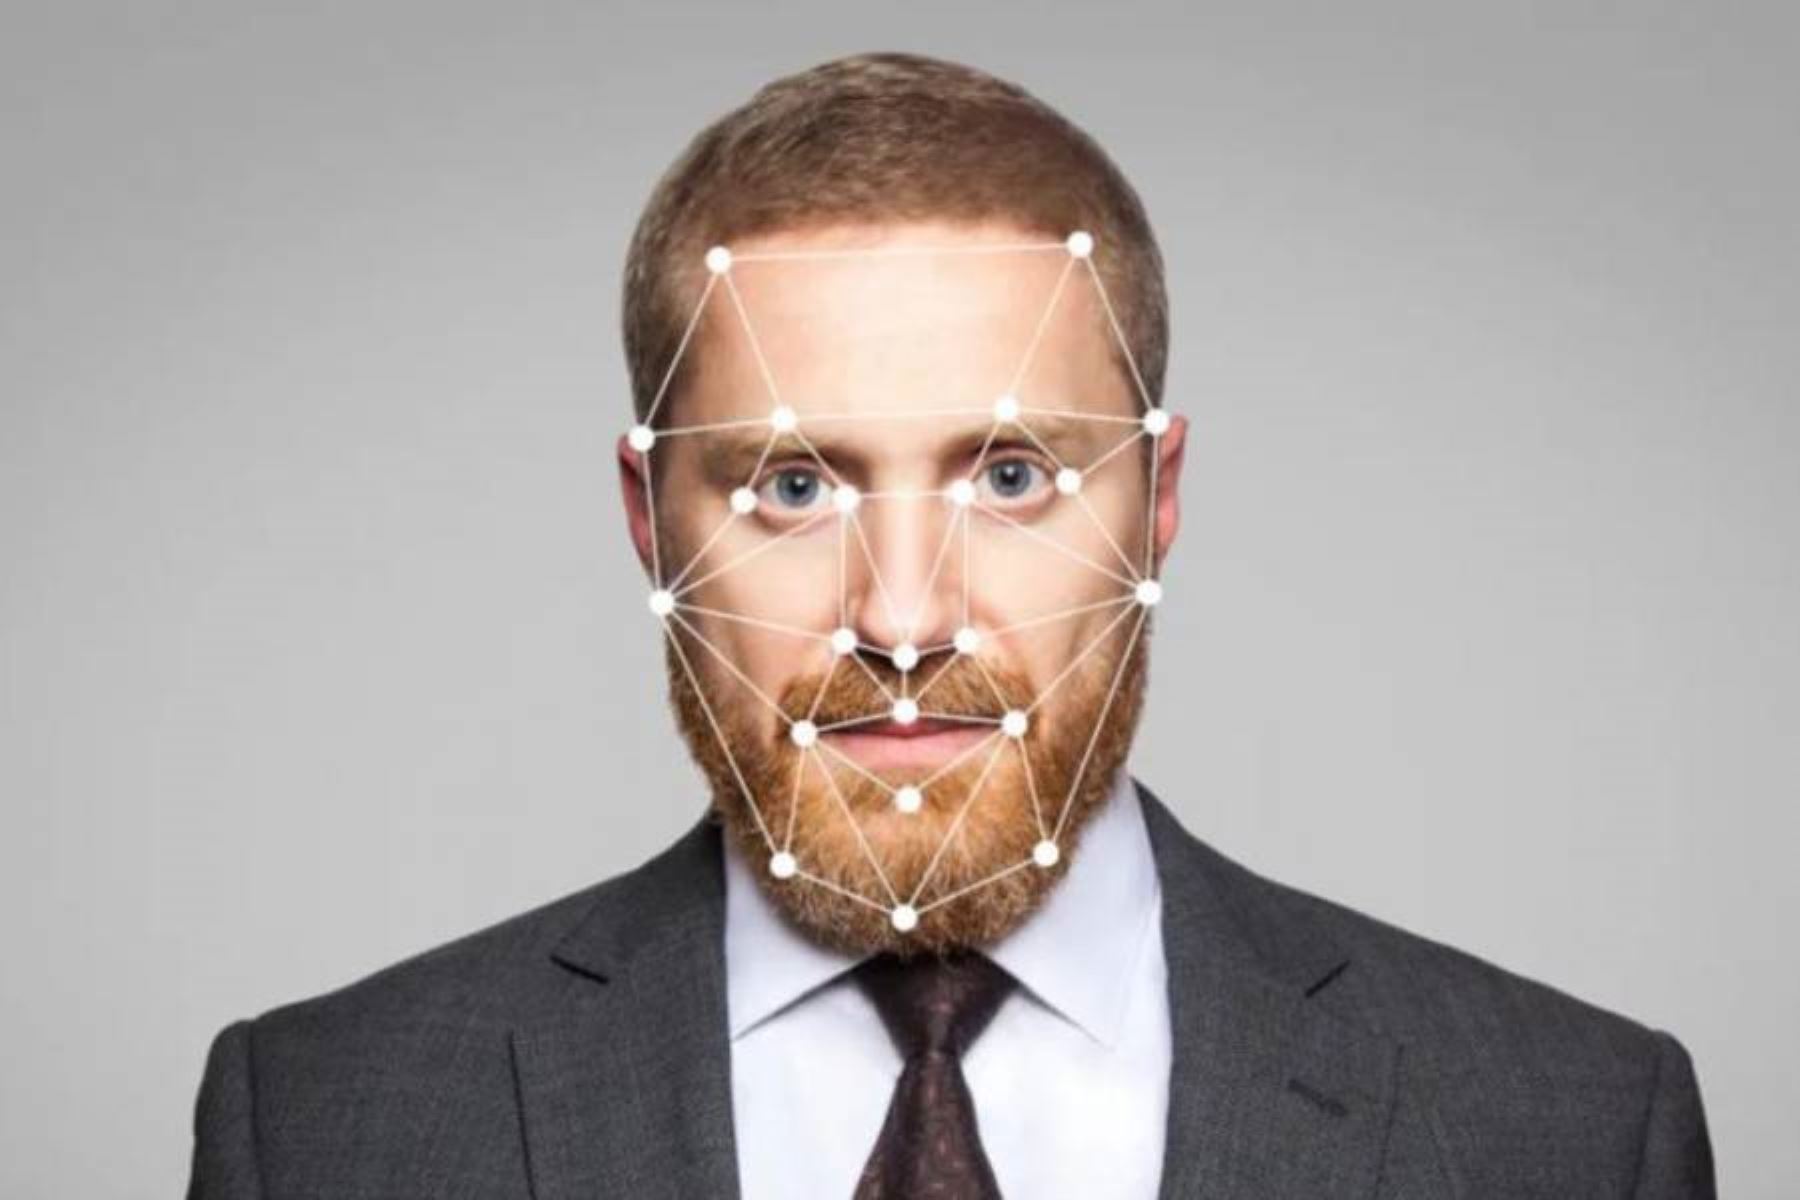 Estudios revelan que existe un 50% de posibilidades de confundir un rostro falso generado con inteligencia artificial con uno real.